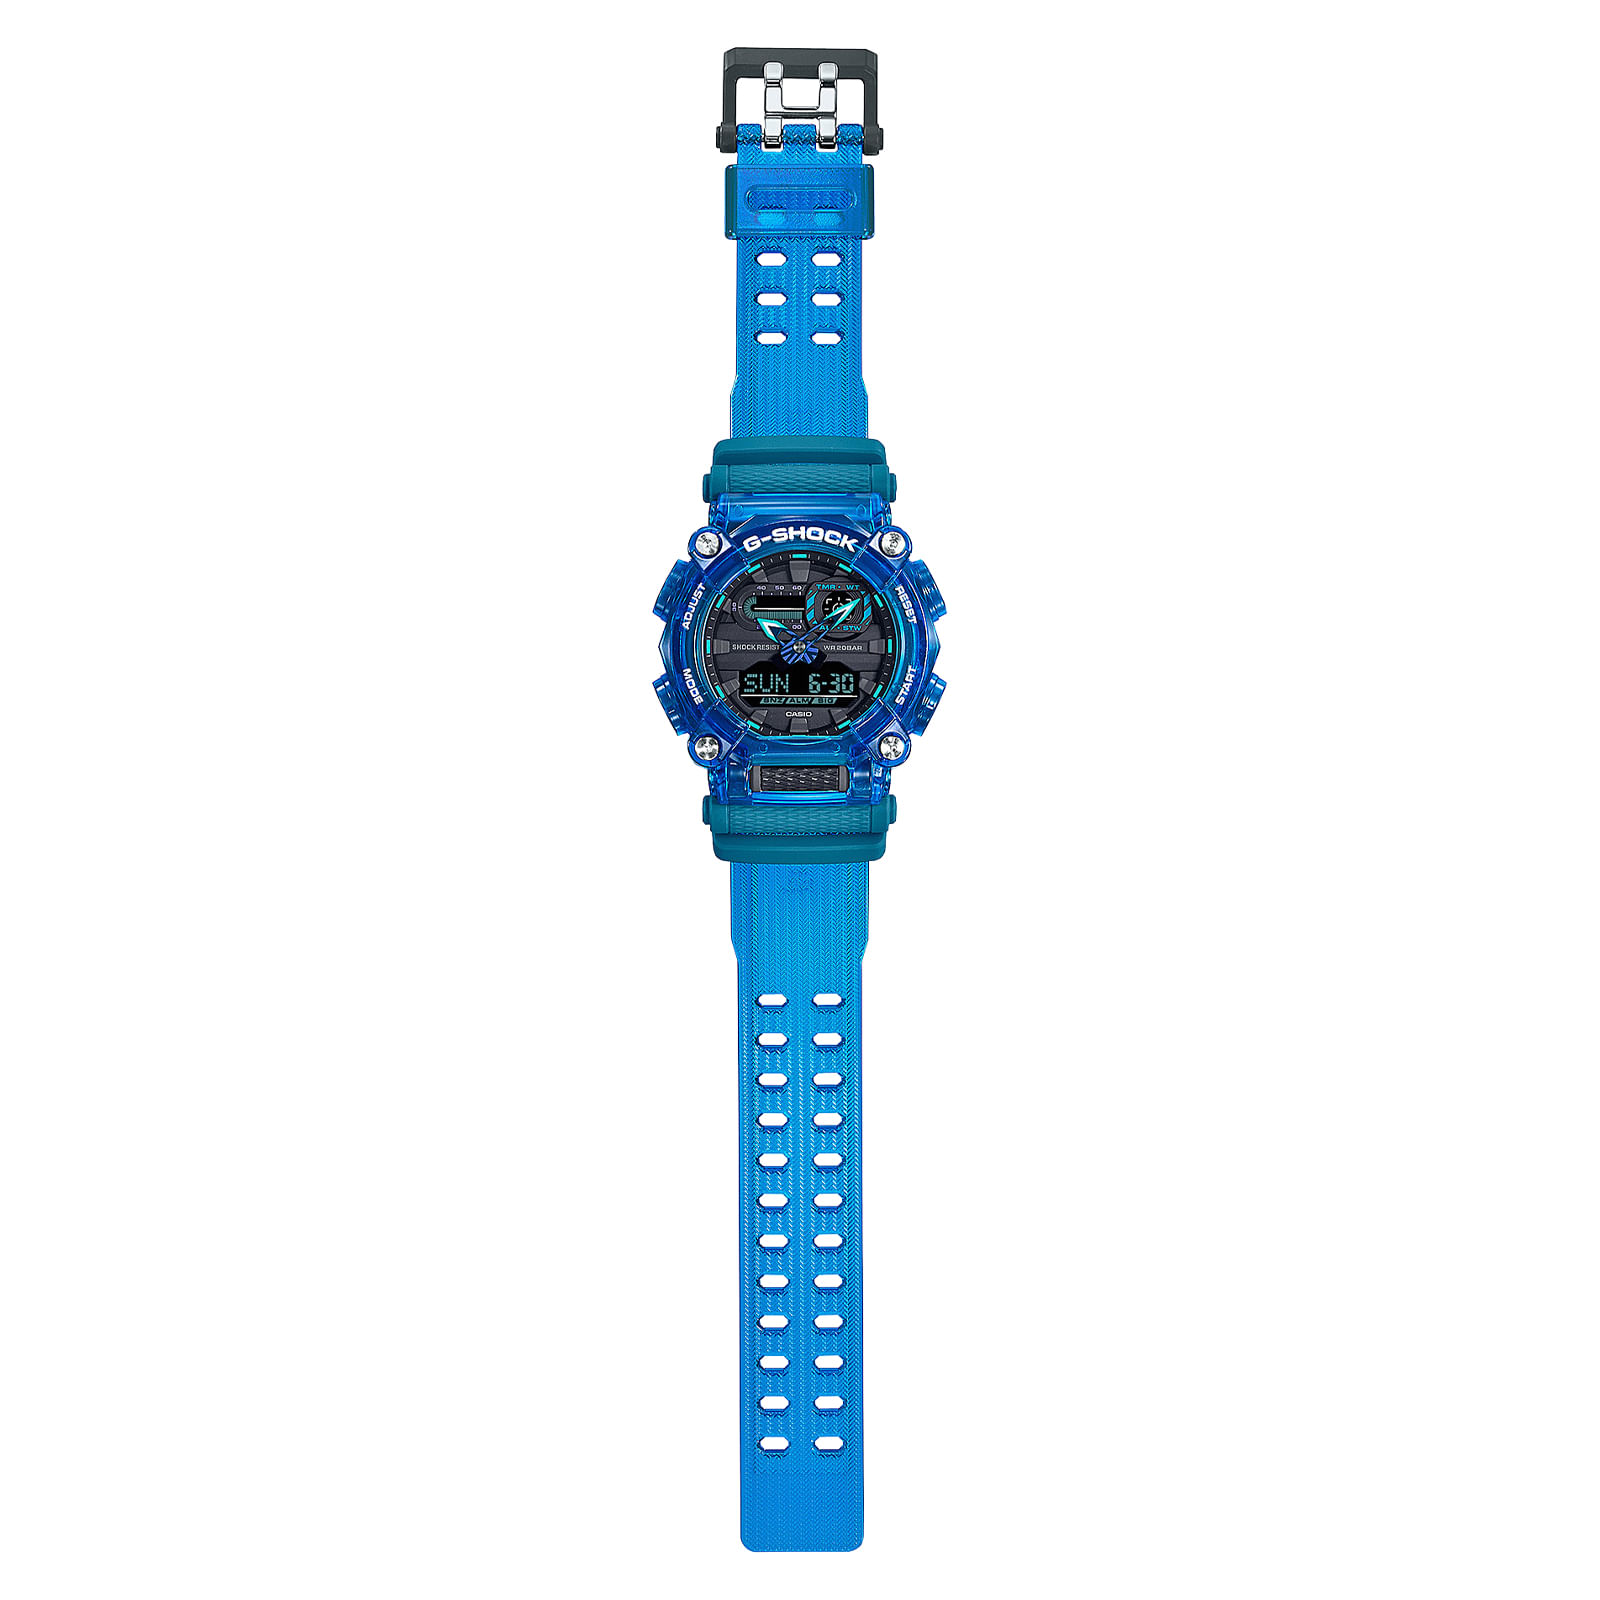 Reloj G-SHOCK GA-900SKL-2A Resina Hombre Azul